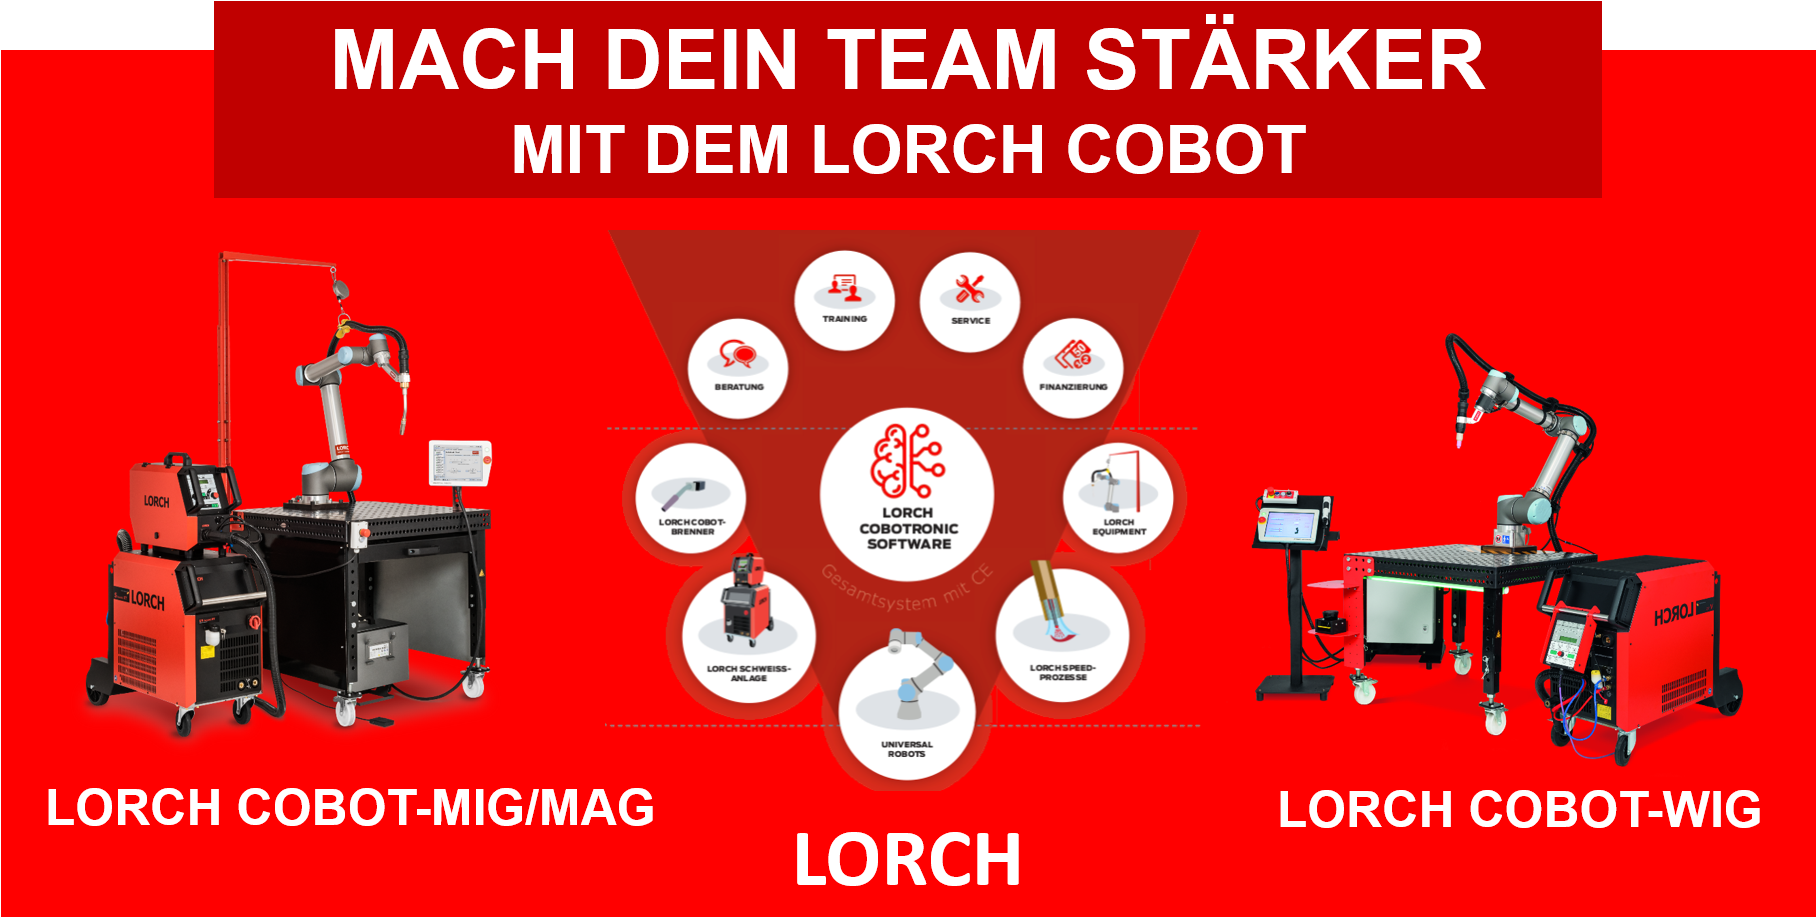 Mach dein Team stärker - Lorch Cobot